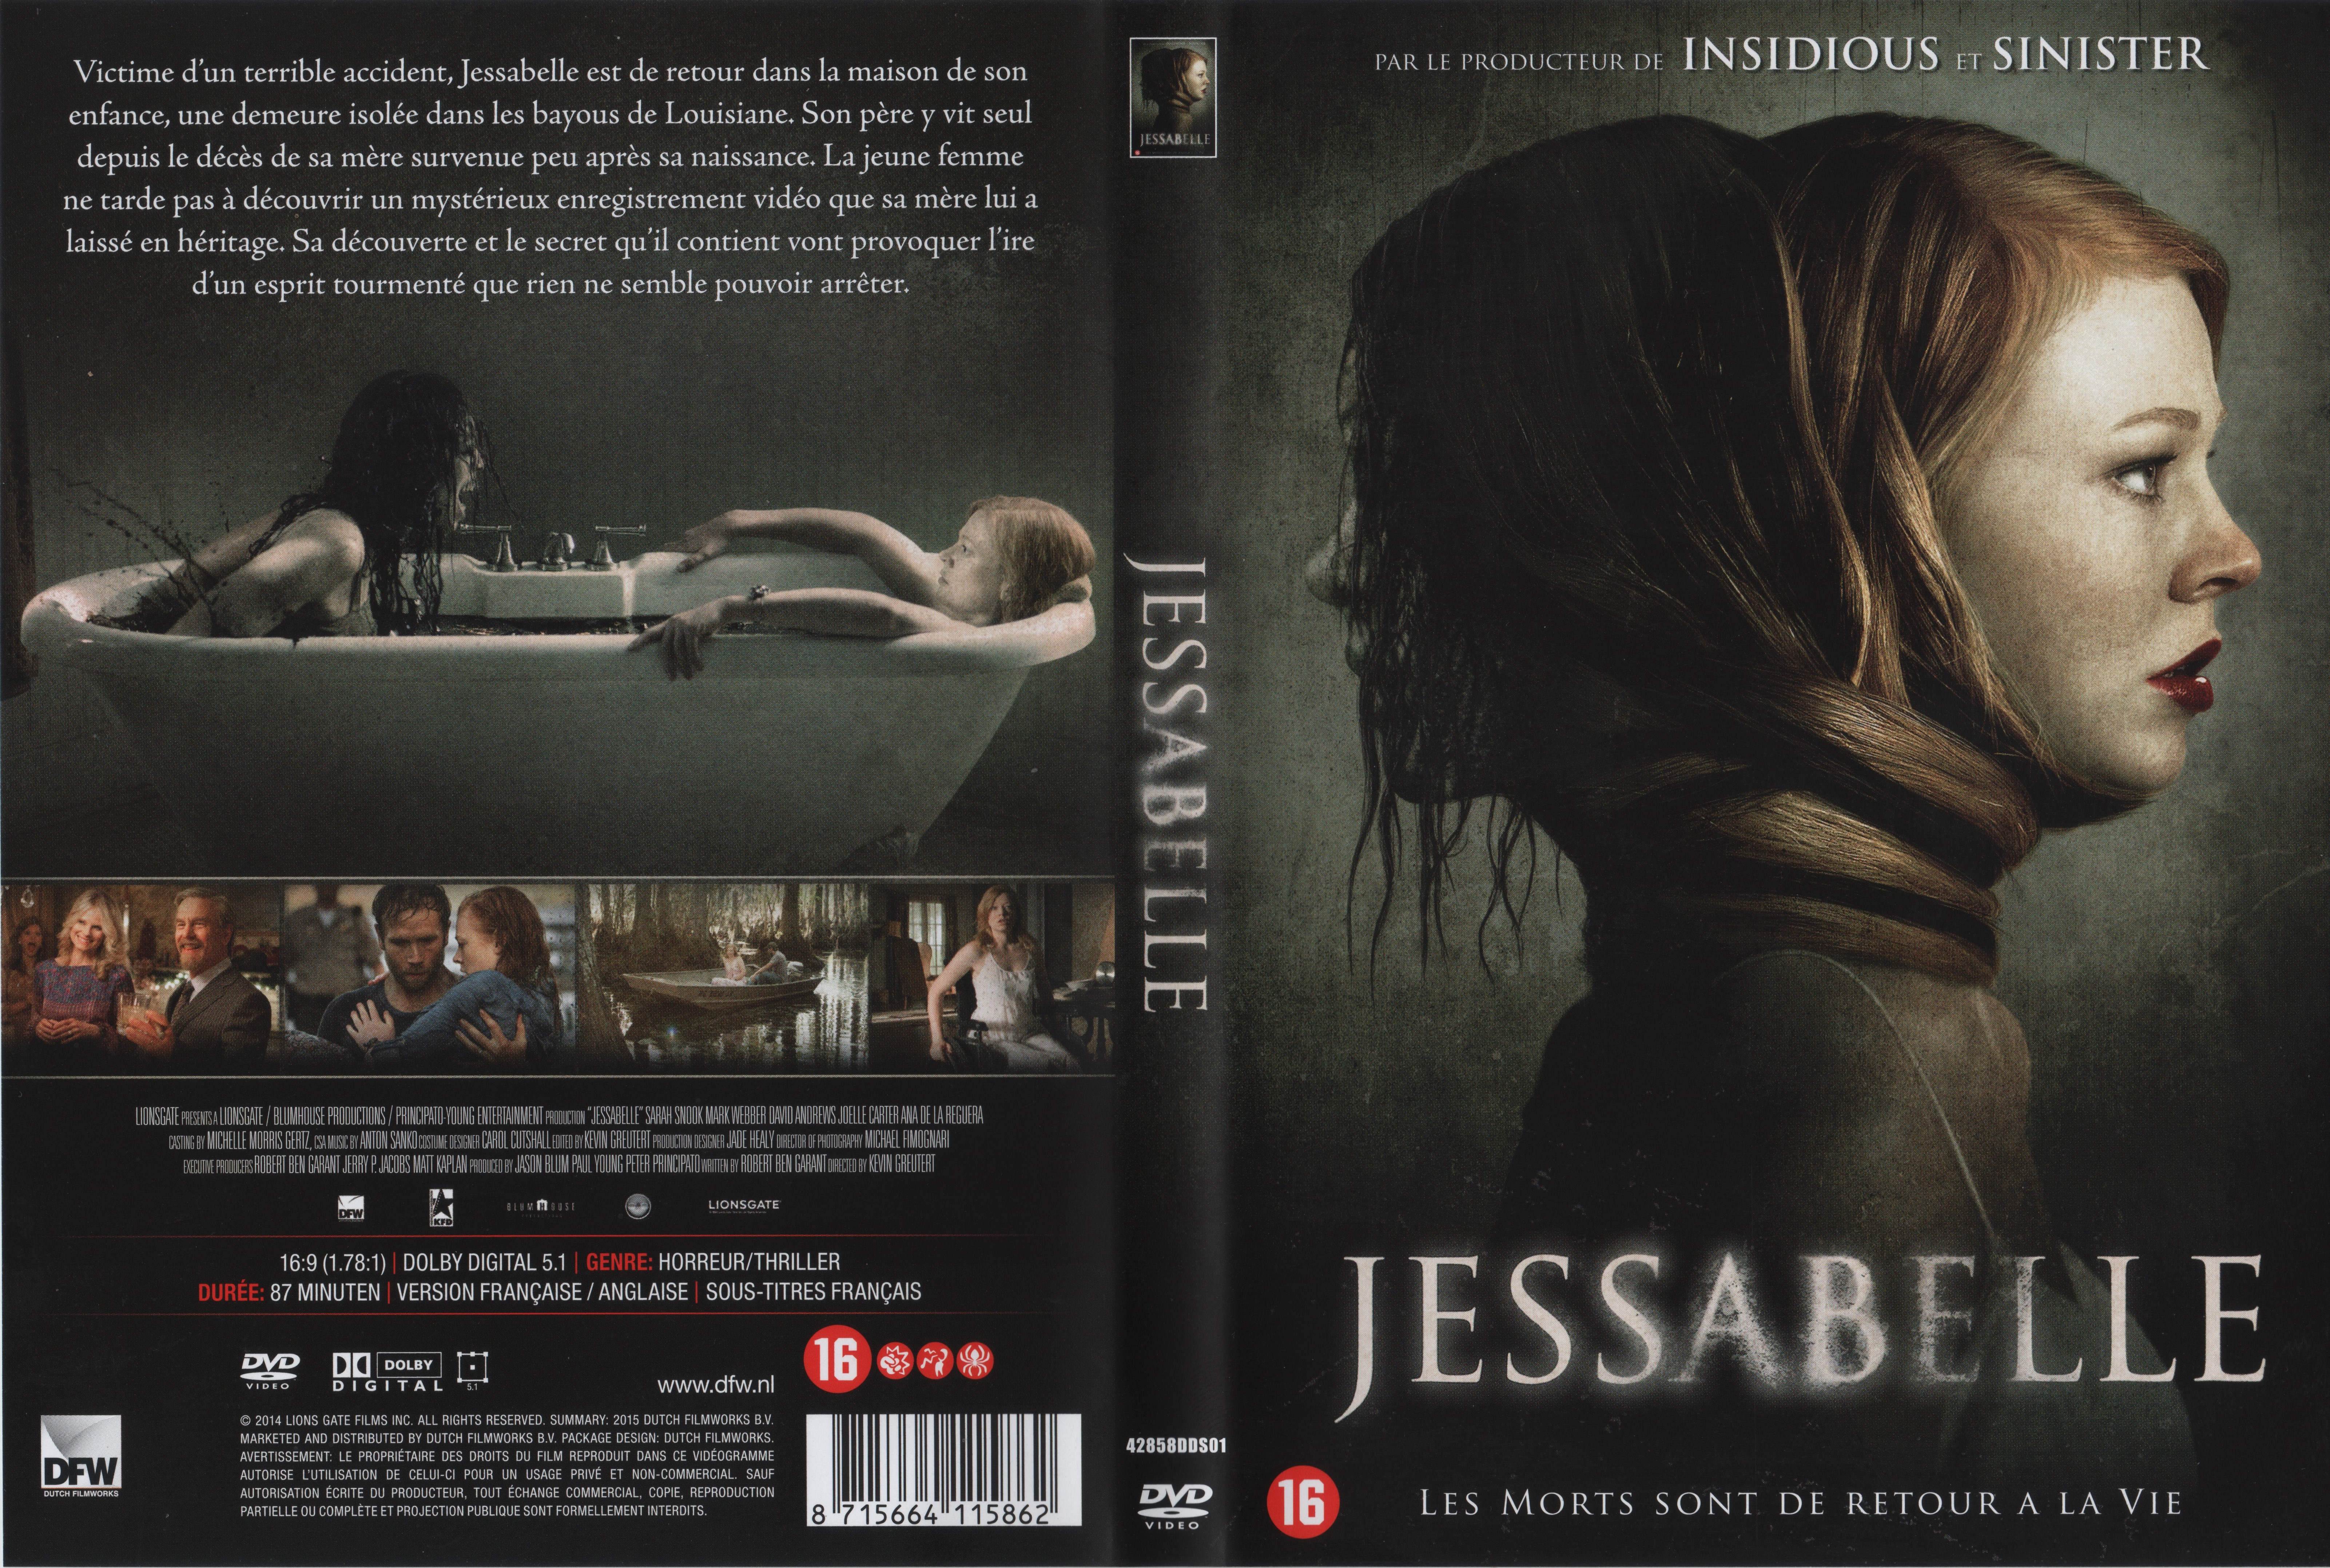 Jaquette DVD Jessabelle v2